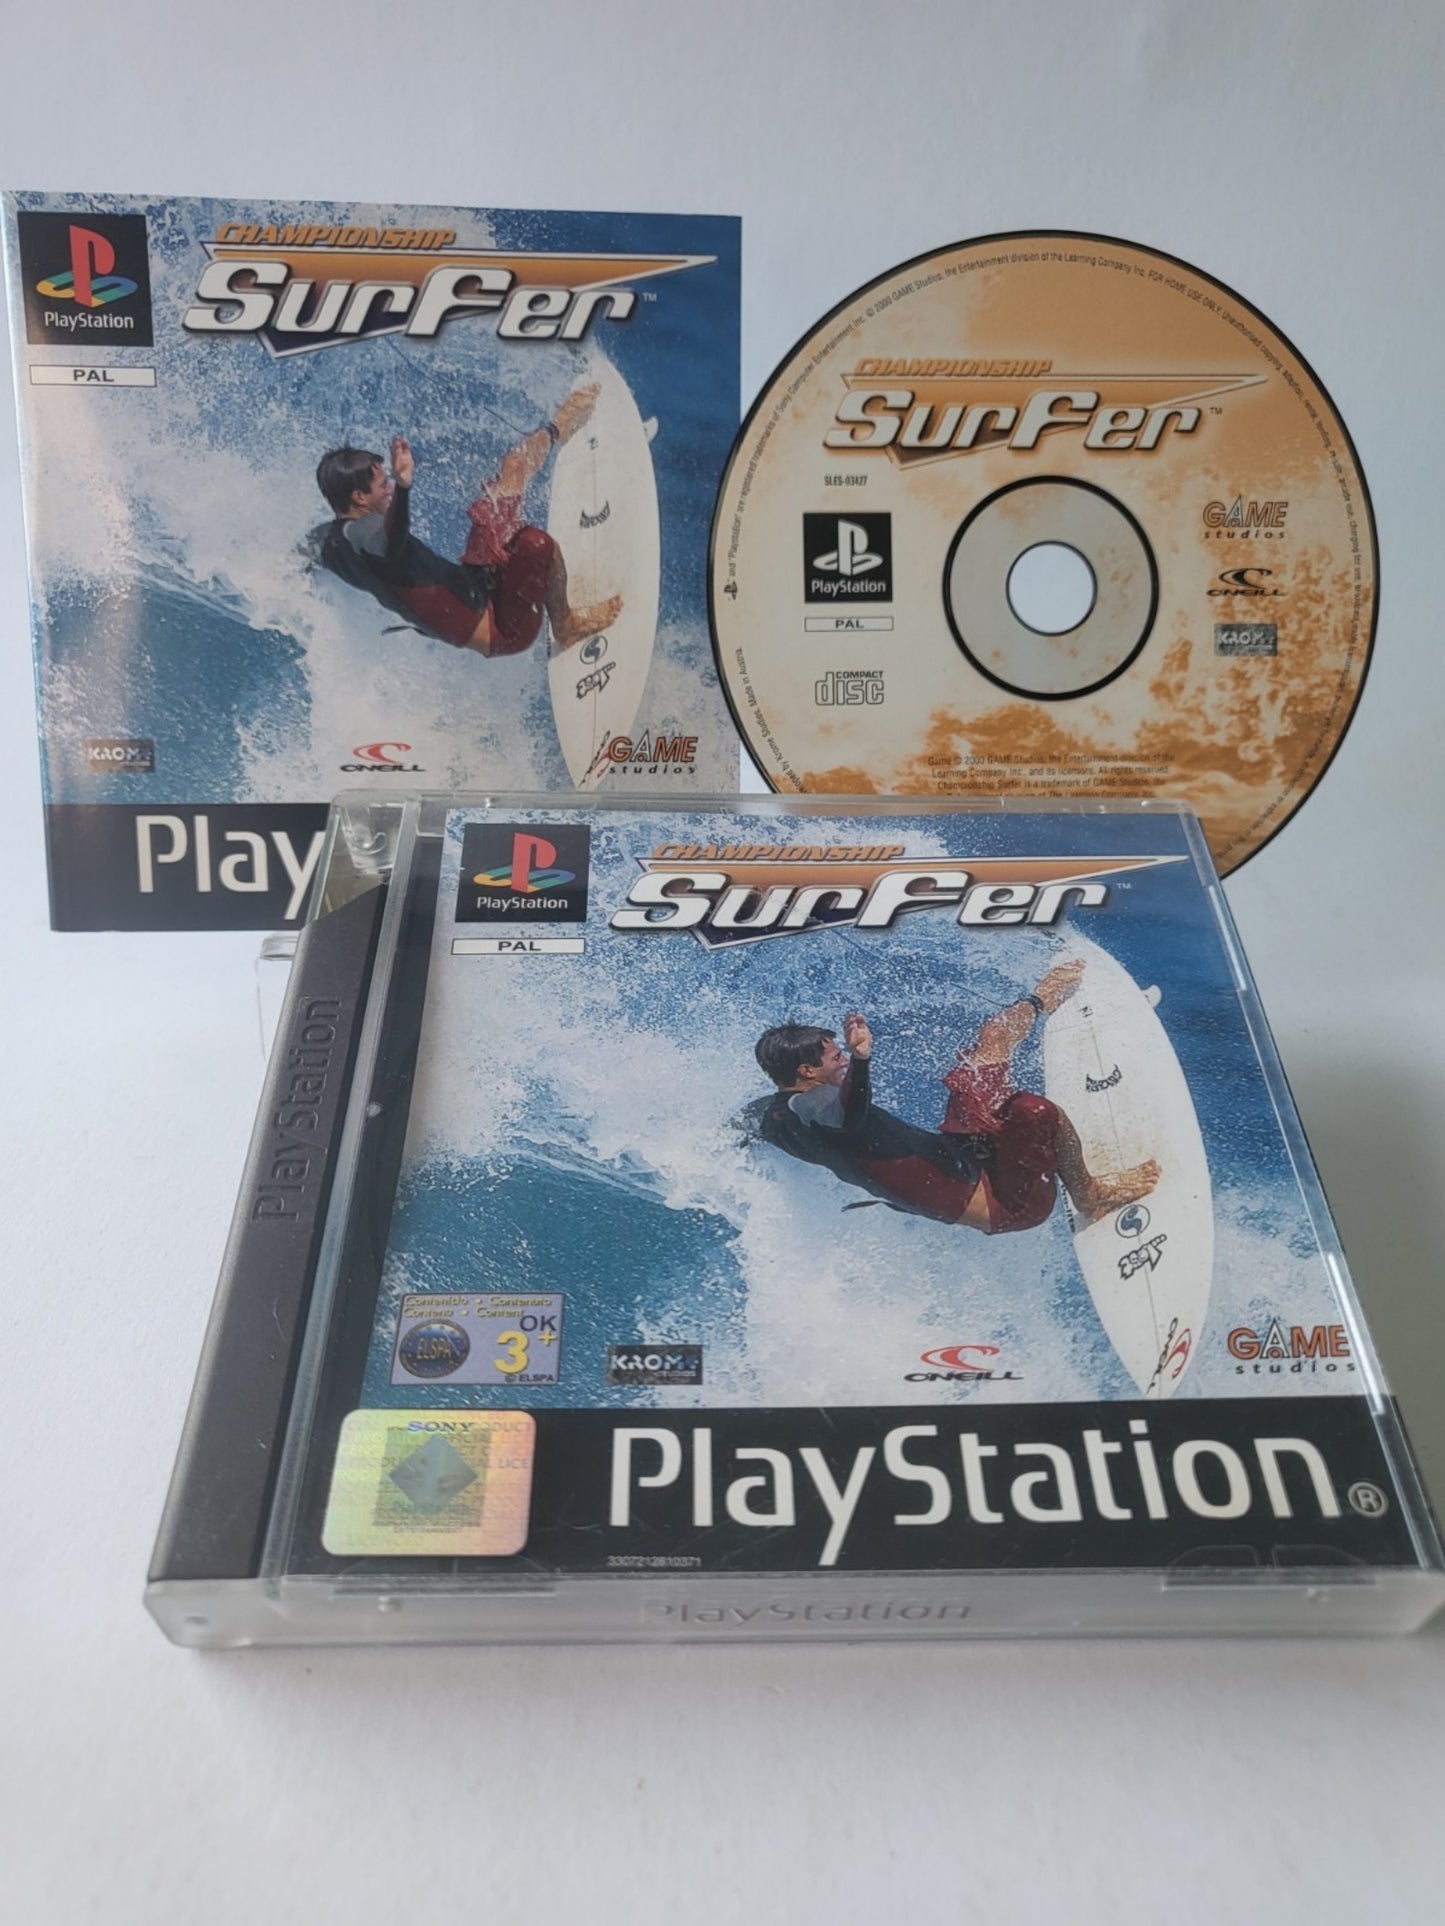 Championship Surfer Playstation 1